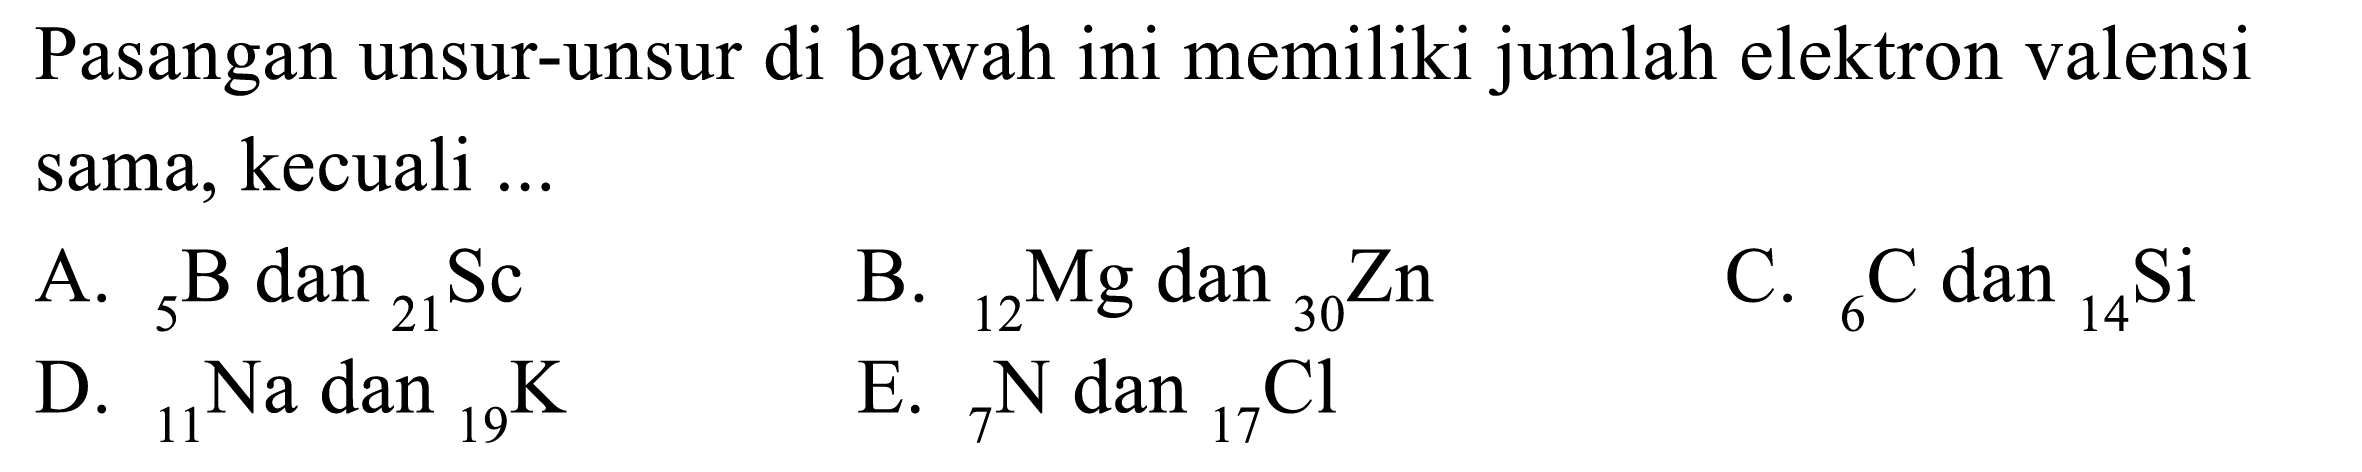 Pasangan unsur-unsur di bawah ini memiliki jumlah elektron valensi sama, kecuali 
A. 5 B dan 21 Sc B. 12 Mg dan 30 Zn C. 6 C dan 14 Si D. 11 Na dan 19 K E. 7 N dan 17 Cl 